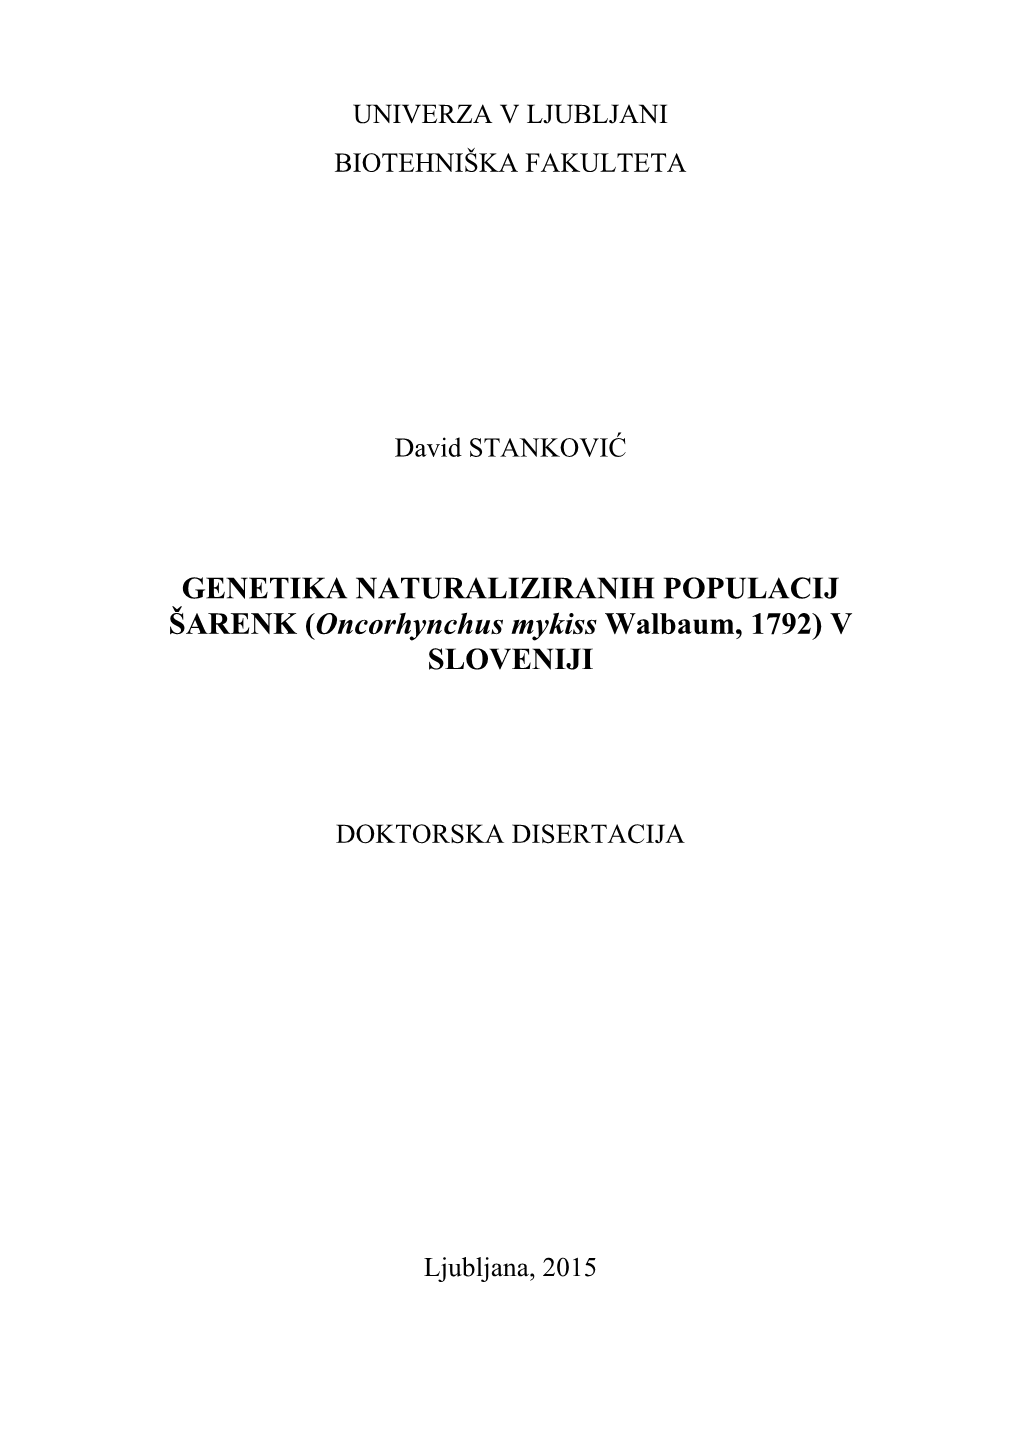 GENETIKA NATURALIZIRANIH POPULACIJ ŠARENK (Oncorhynchus Mykiss Walbaum, 1792) V SLOVENIJI